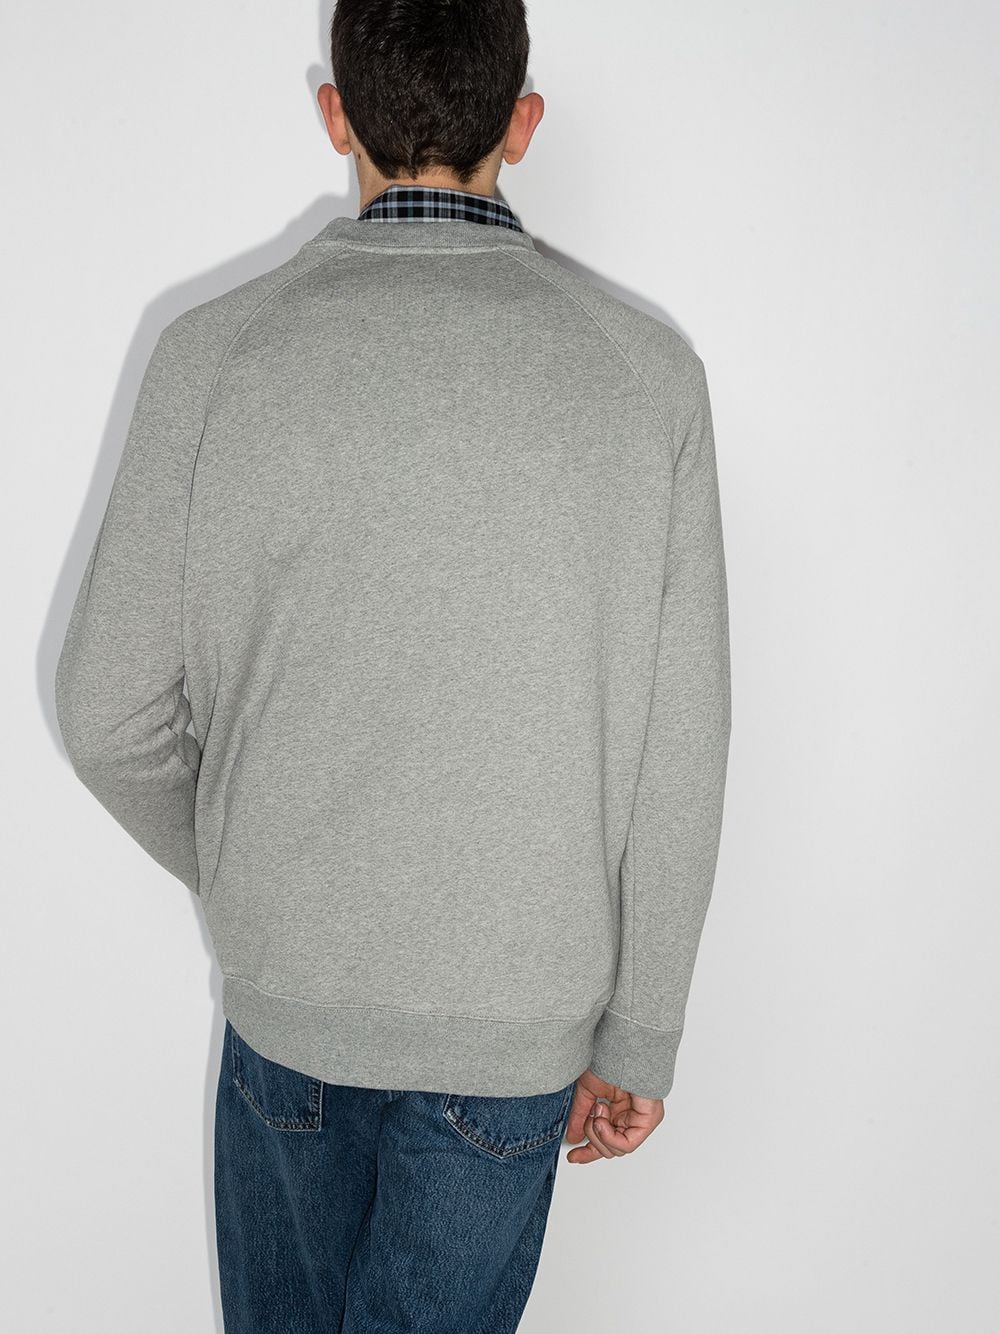 Maison Kitsune' Sweaters Light Grey